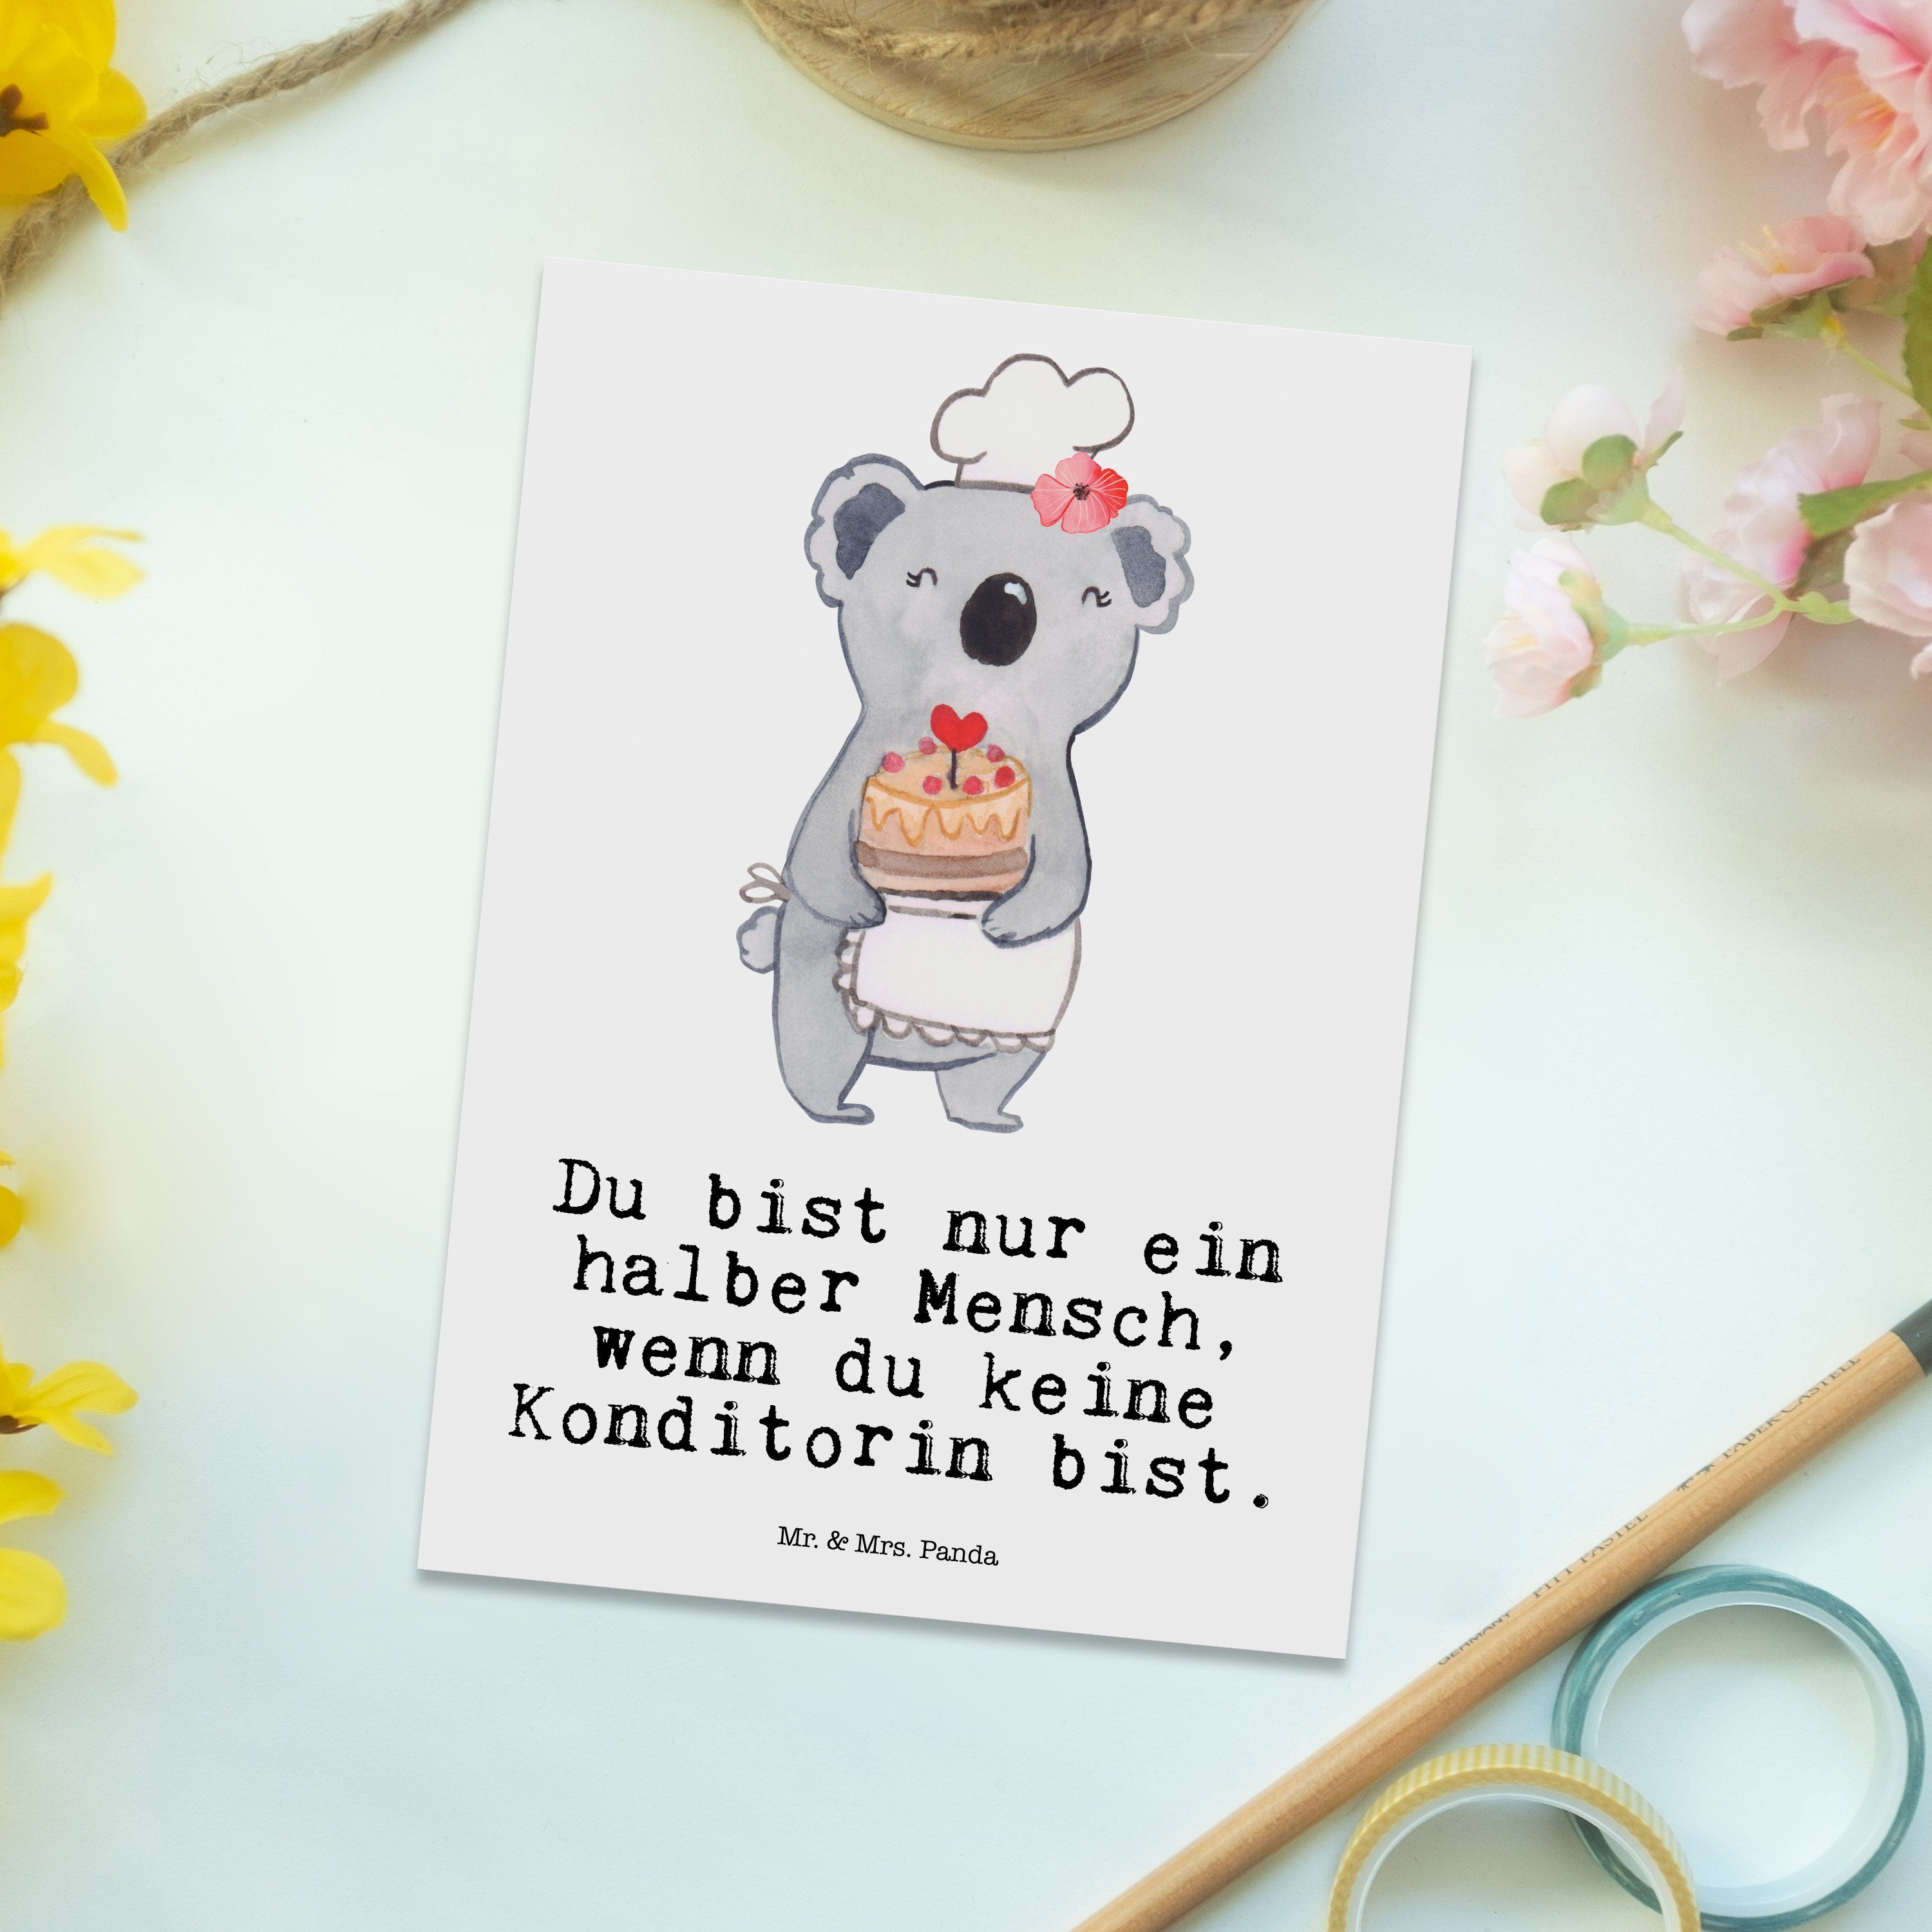 Mr. & Mrs. Weiß Bäckerin, - - Konditorin Panda Patissier mit Herz Postkarte Geschenk, Einladung